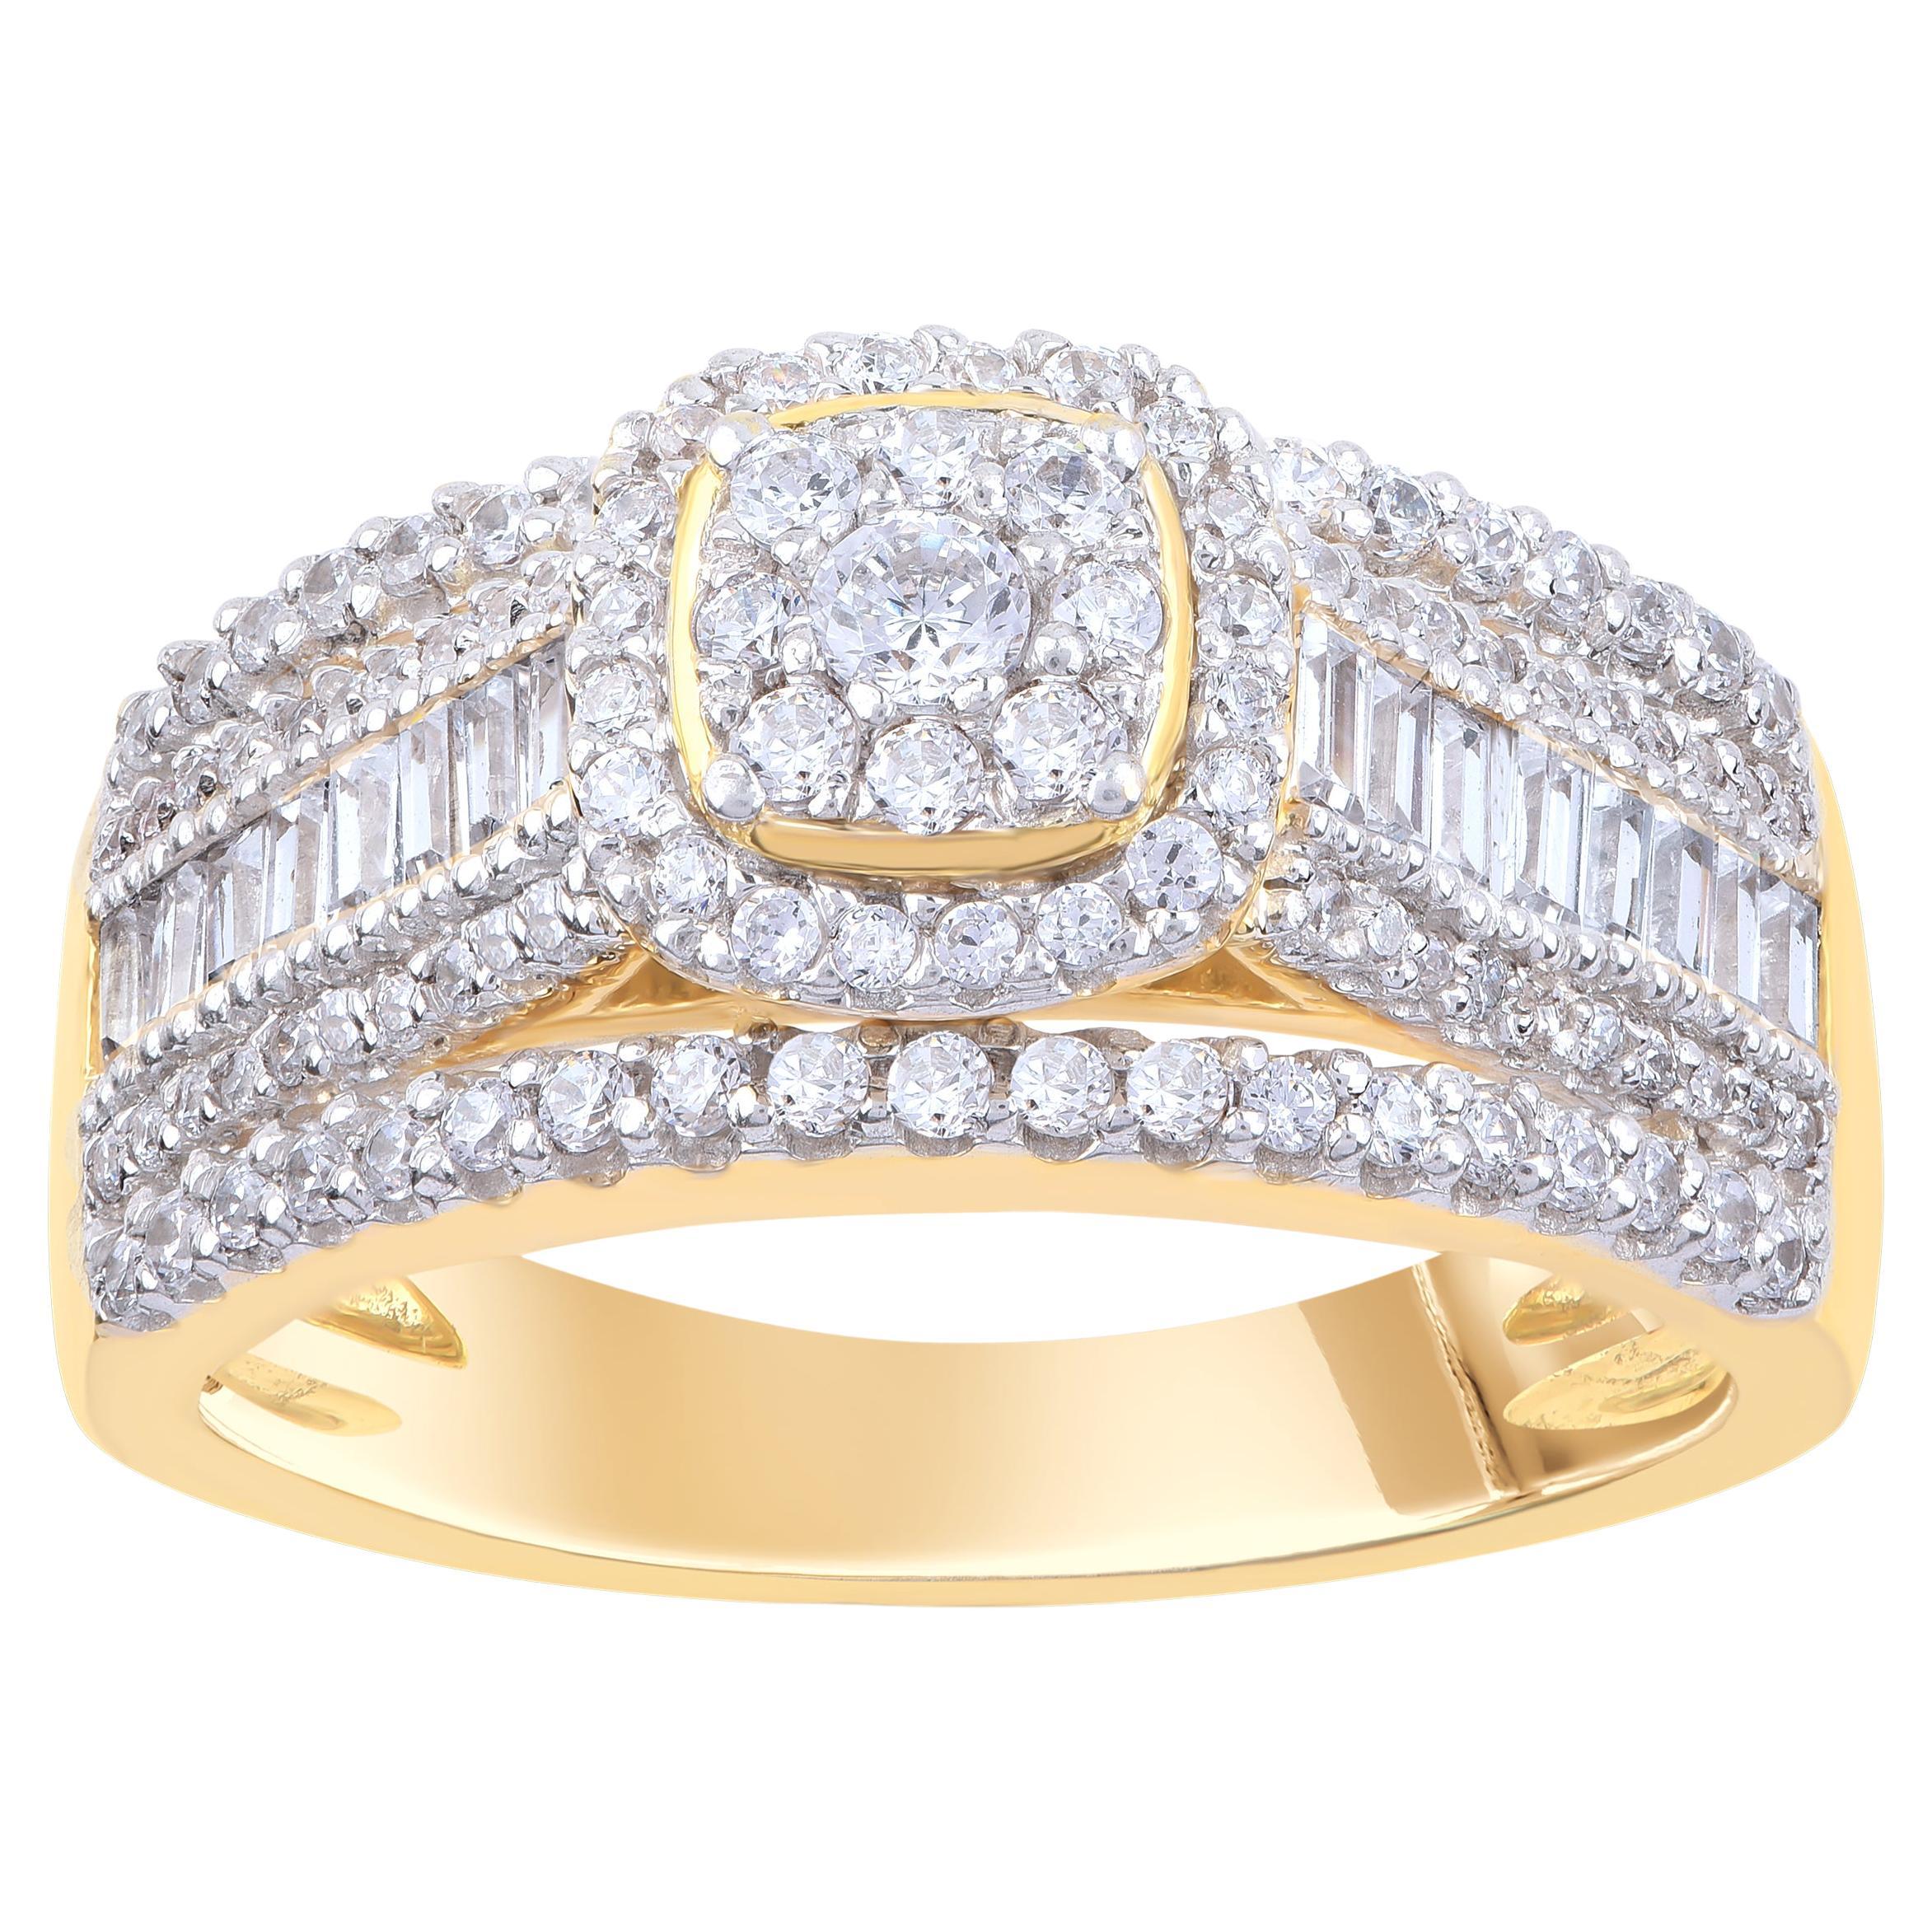 TJD 1.0 Carat Natural Diamond Wedding Band Ring in 14 Karat Yellow Gold